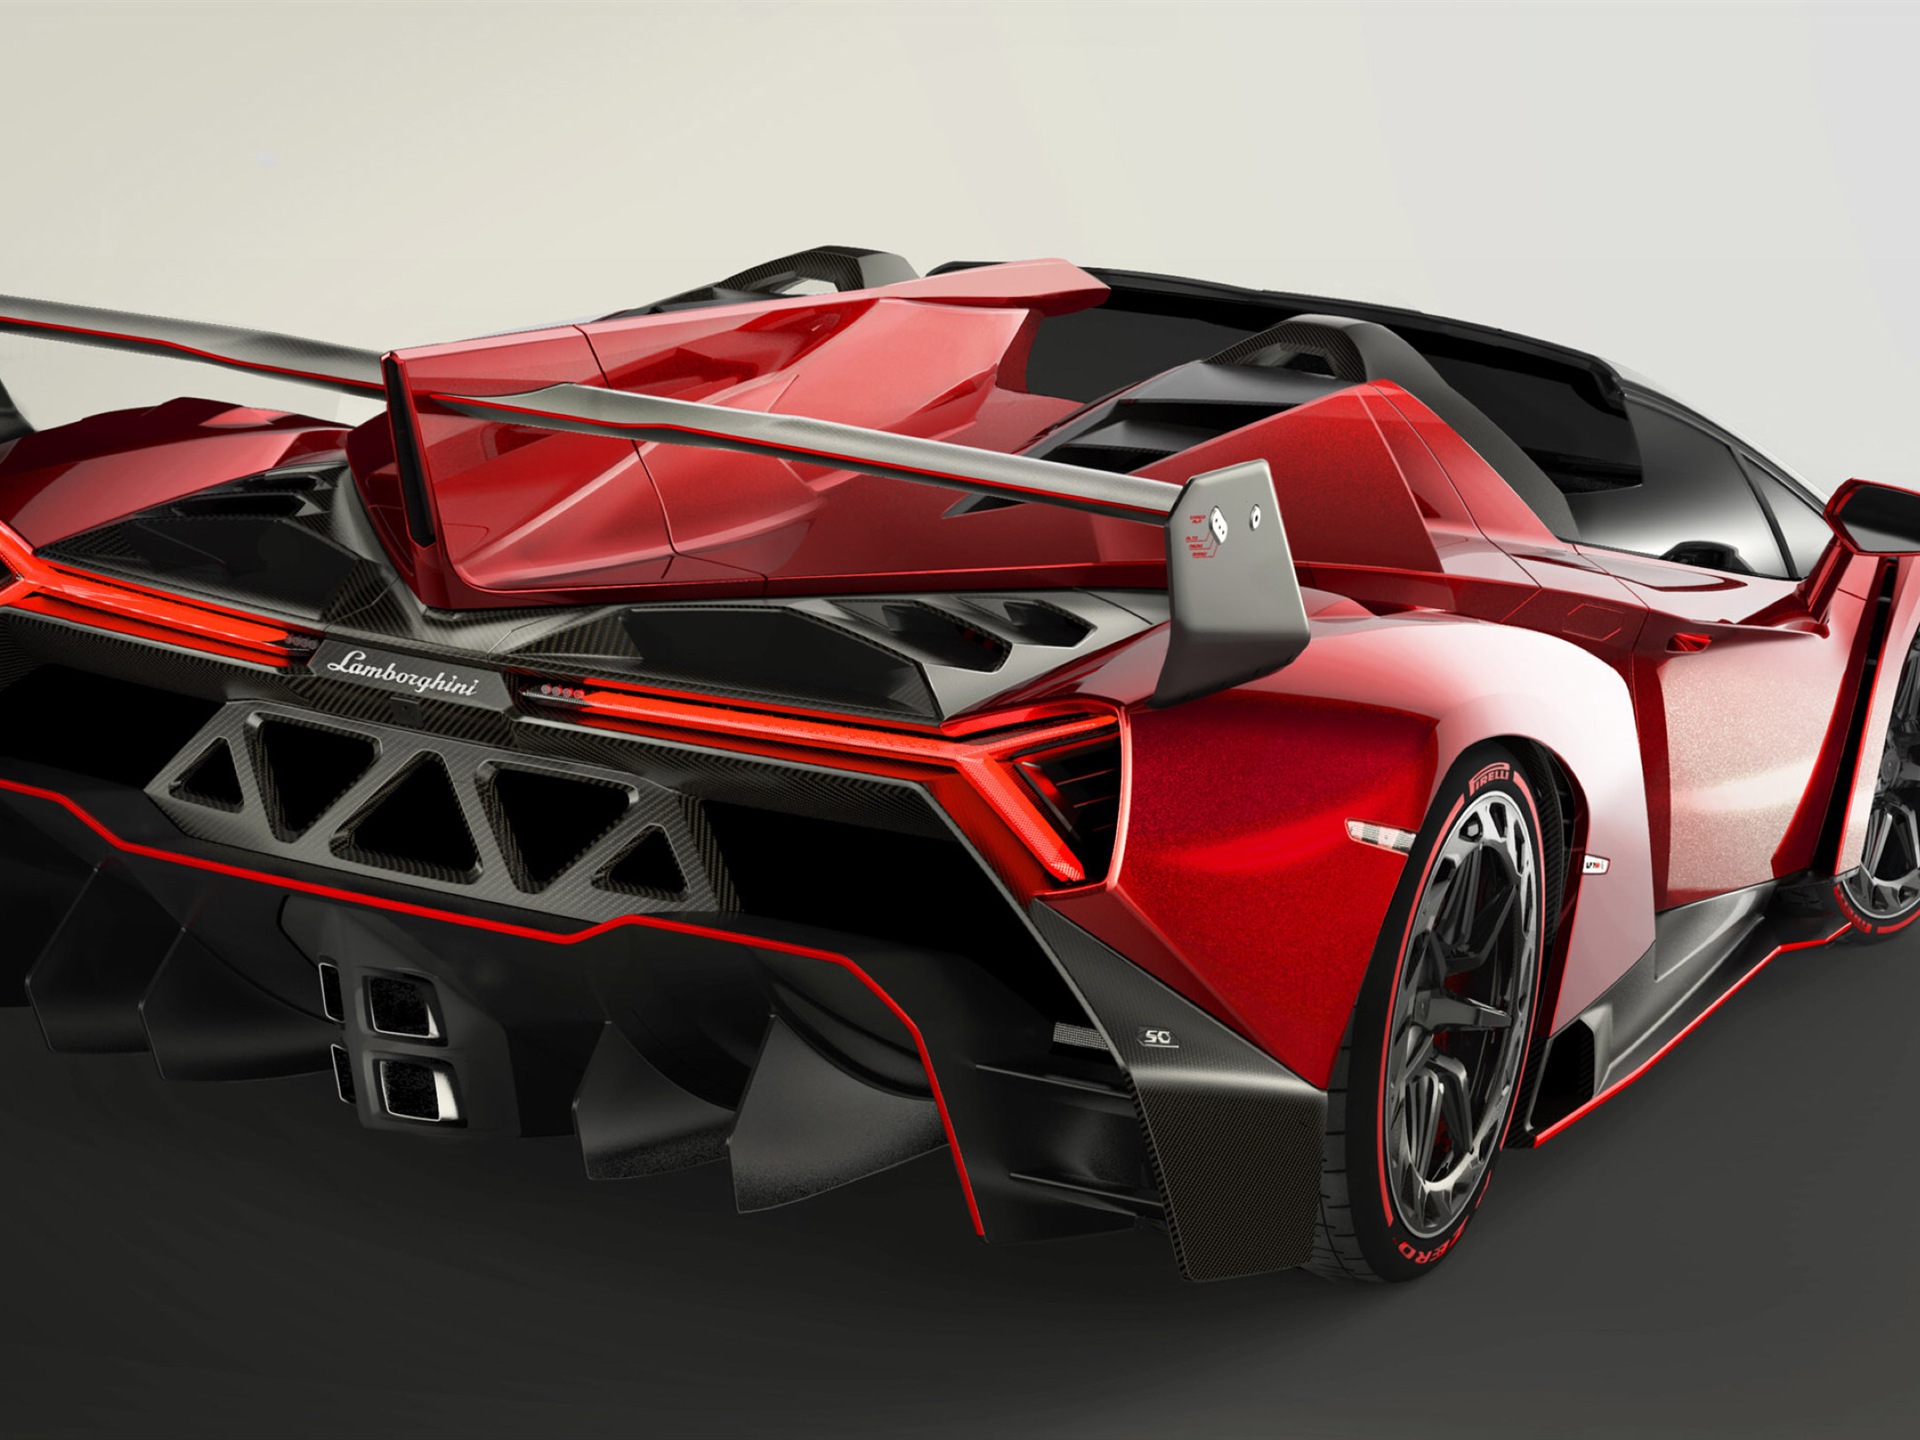 2014 Lamborghini Veneno Roadster red supercar HD wallpapers #1 - 1920x1440